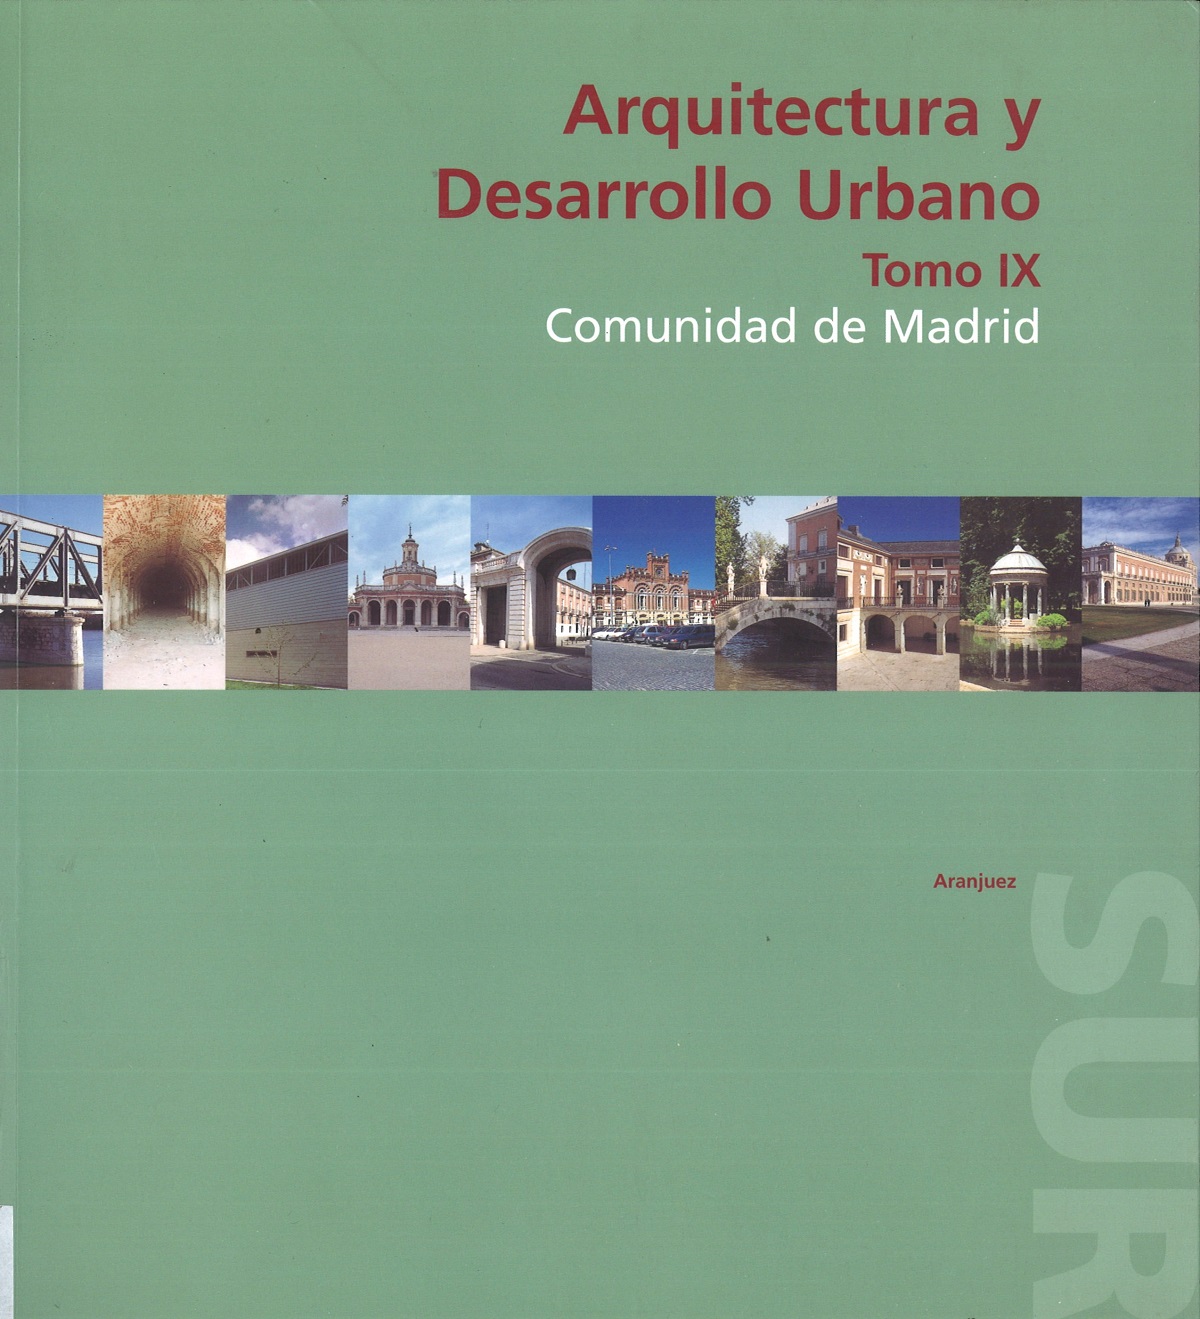 Portada de Arquitectura y Desarrollo Urbano. Comunidad de Madrid. Tomo IX.  Zona Sur 